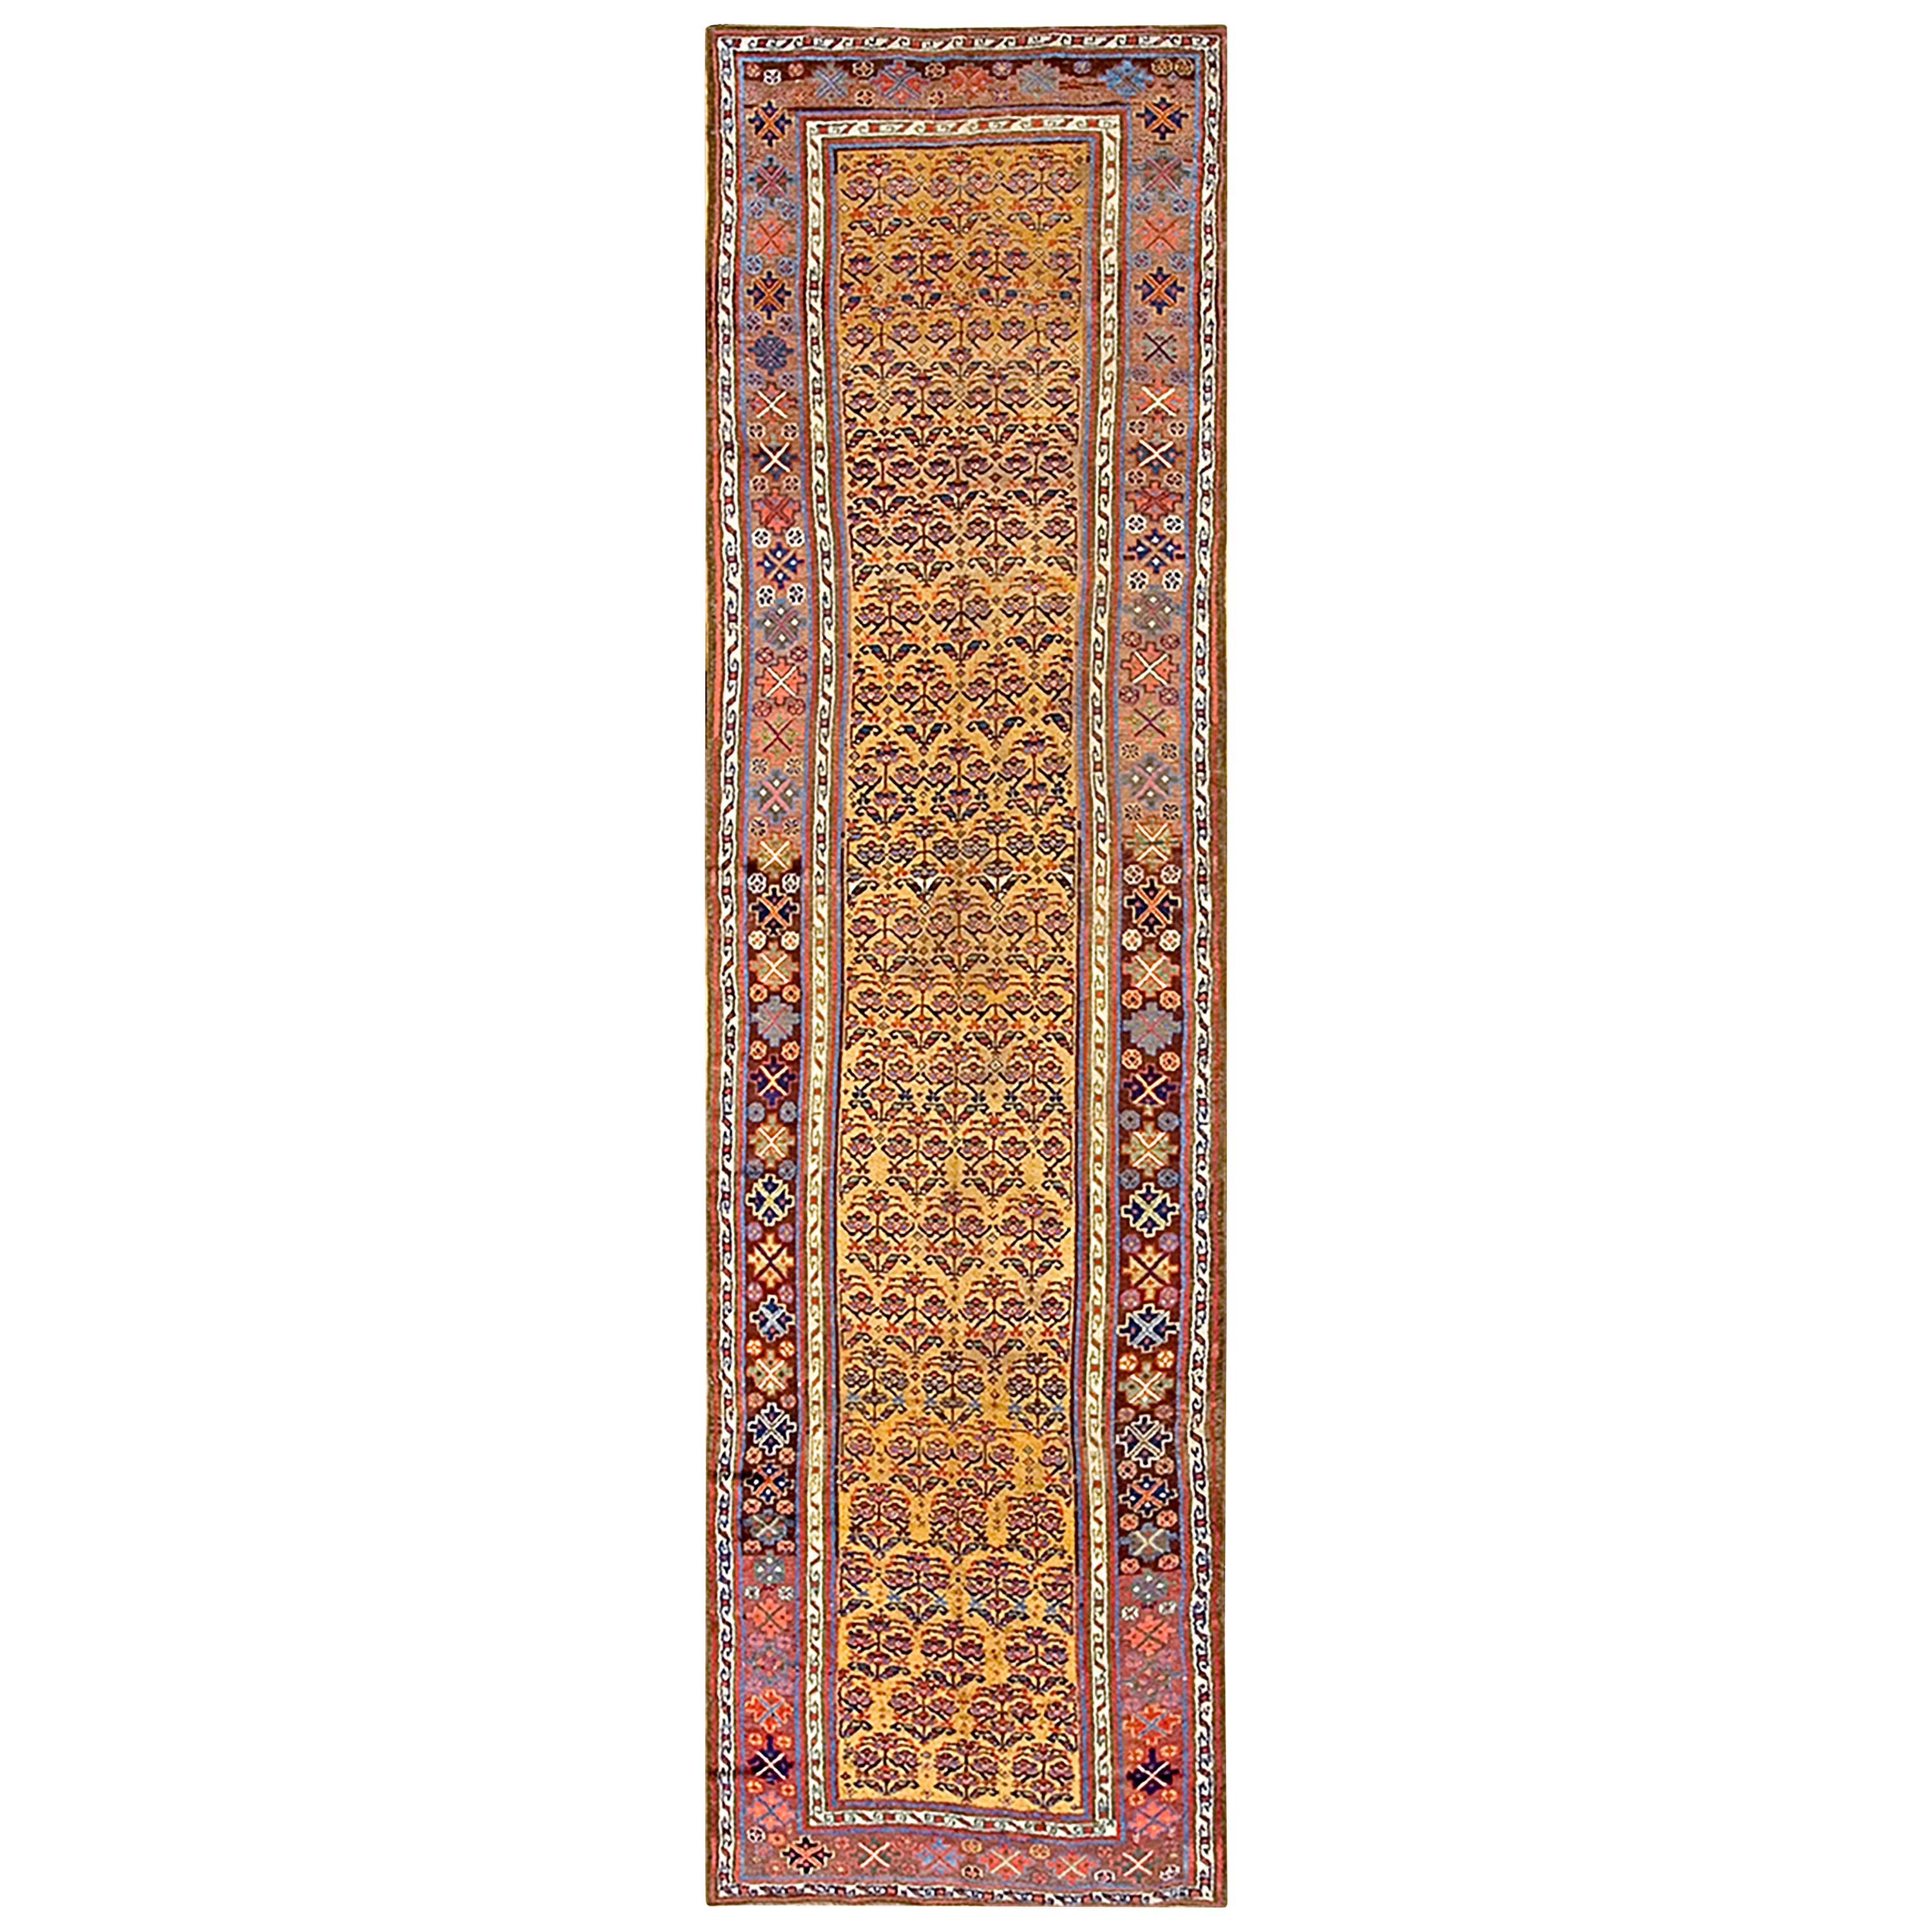 W. Persischer Kurdischer Teppich des 19. Jahrhunderts ( 3'10" x 13'7" - 117 x 414)